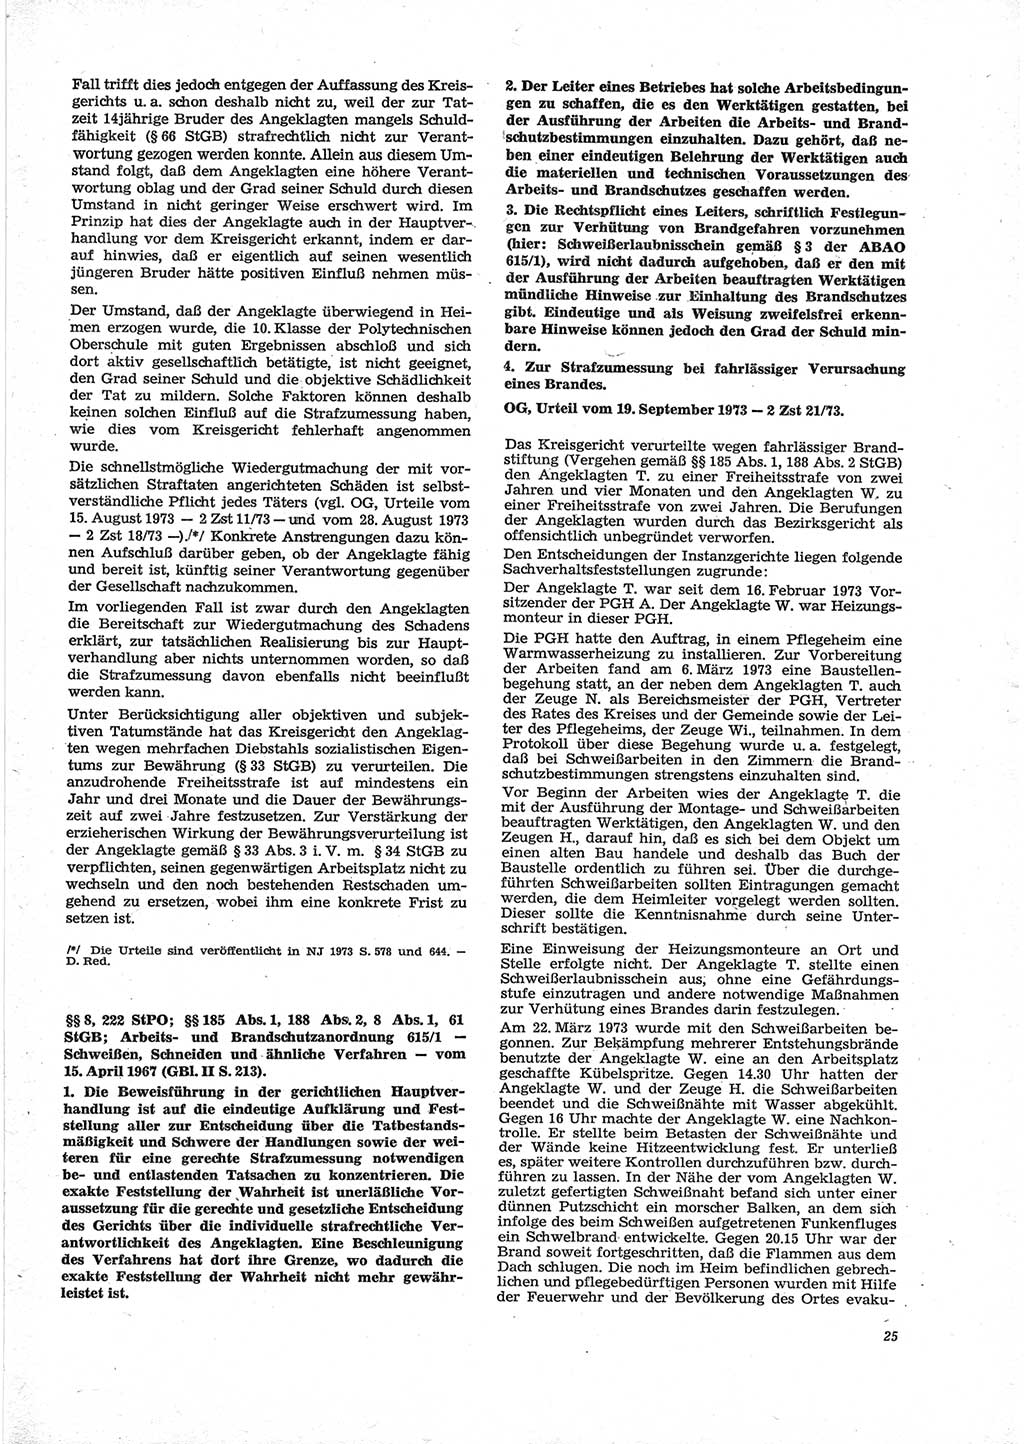 Neue Justiz (NJ), Zeitschrift für Recht und Rechtswissenschaft [Deutsche Demokratische Republik (DDR)], 28. Jahrgang 1974, Seite 25 (NJ DDR 1974, S. 25)